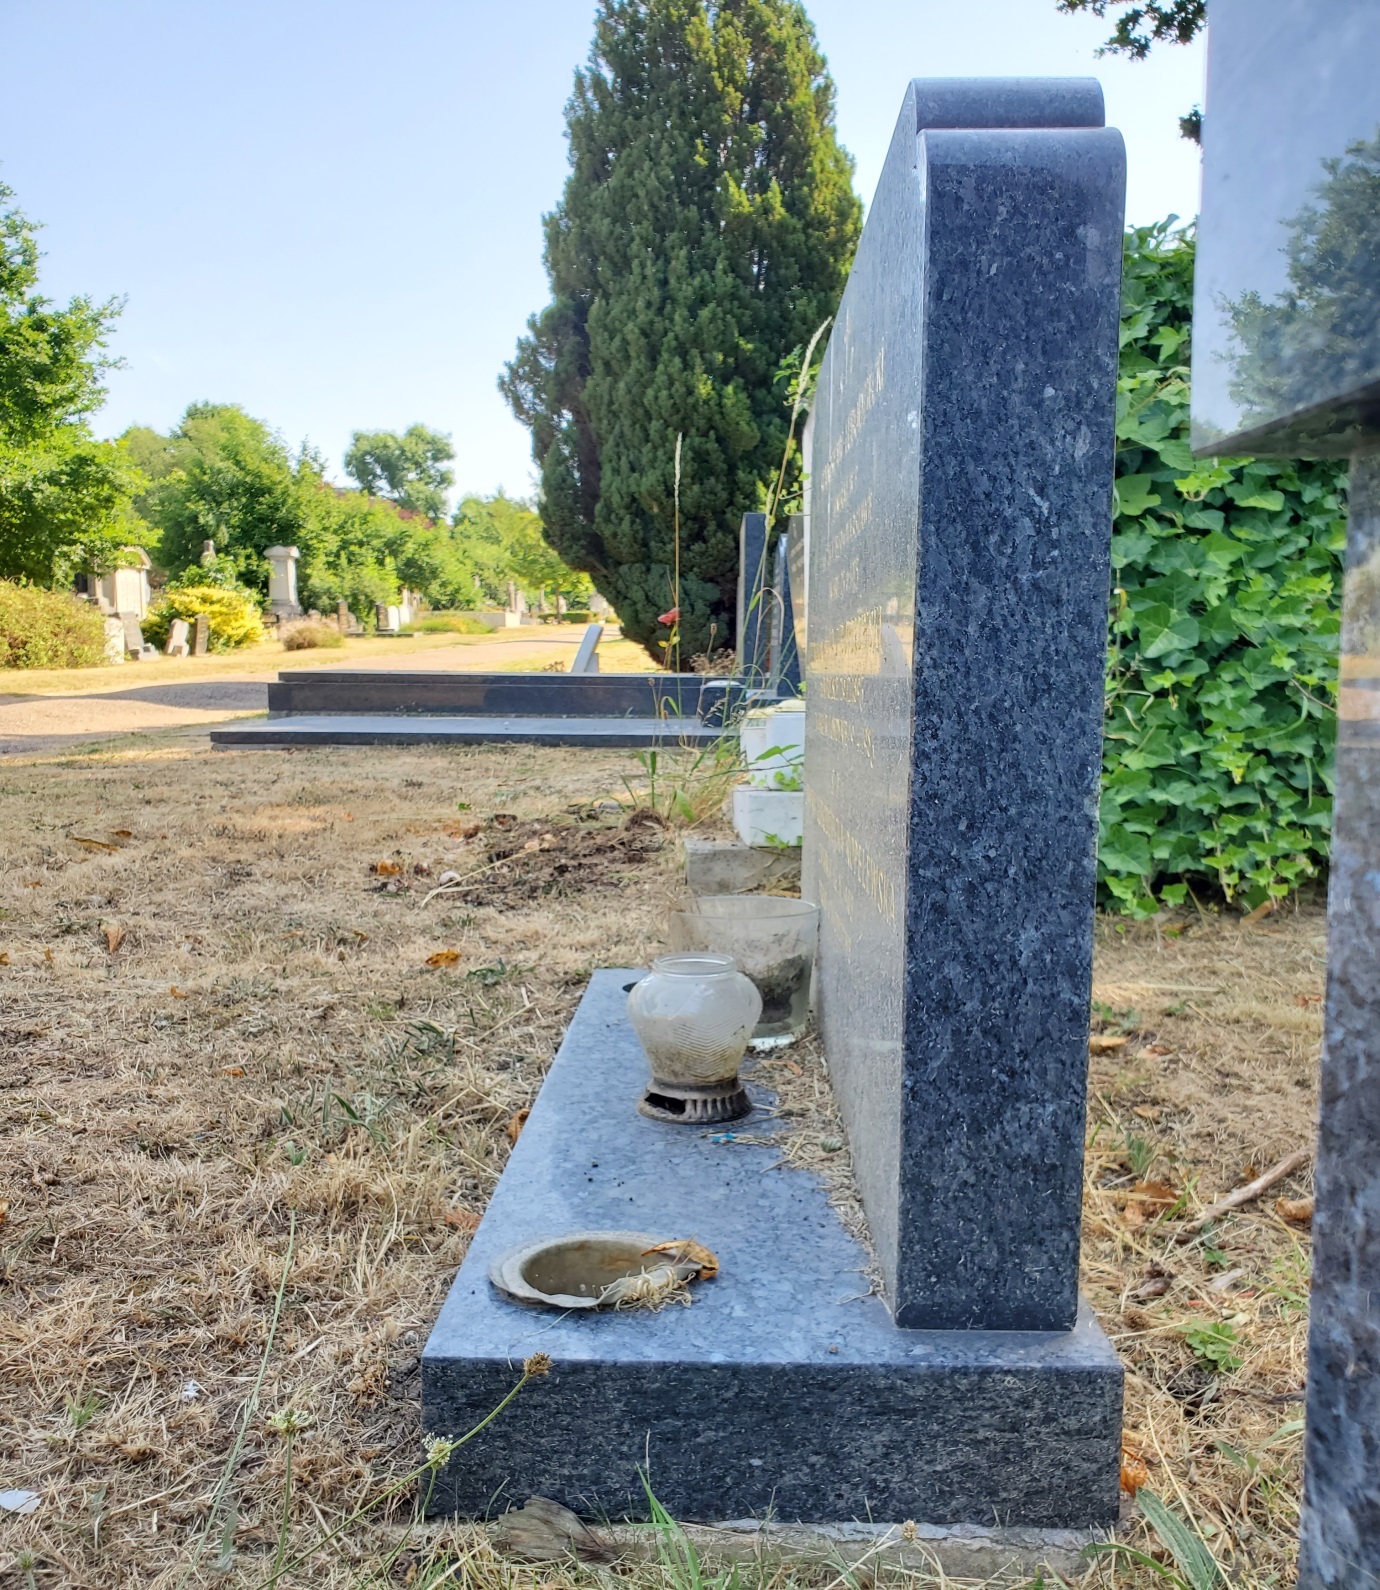 Tombstone of Stanisław Lubodziecki, Andrzej Roplewski and Janina Lubodziecka Roplewski, Hapstead Cemetery, London